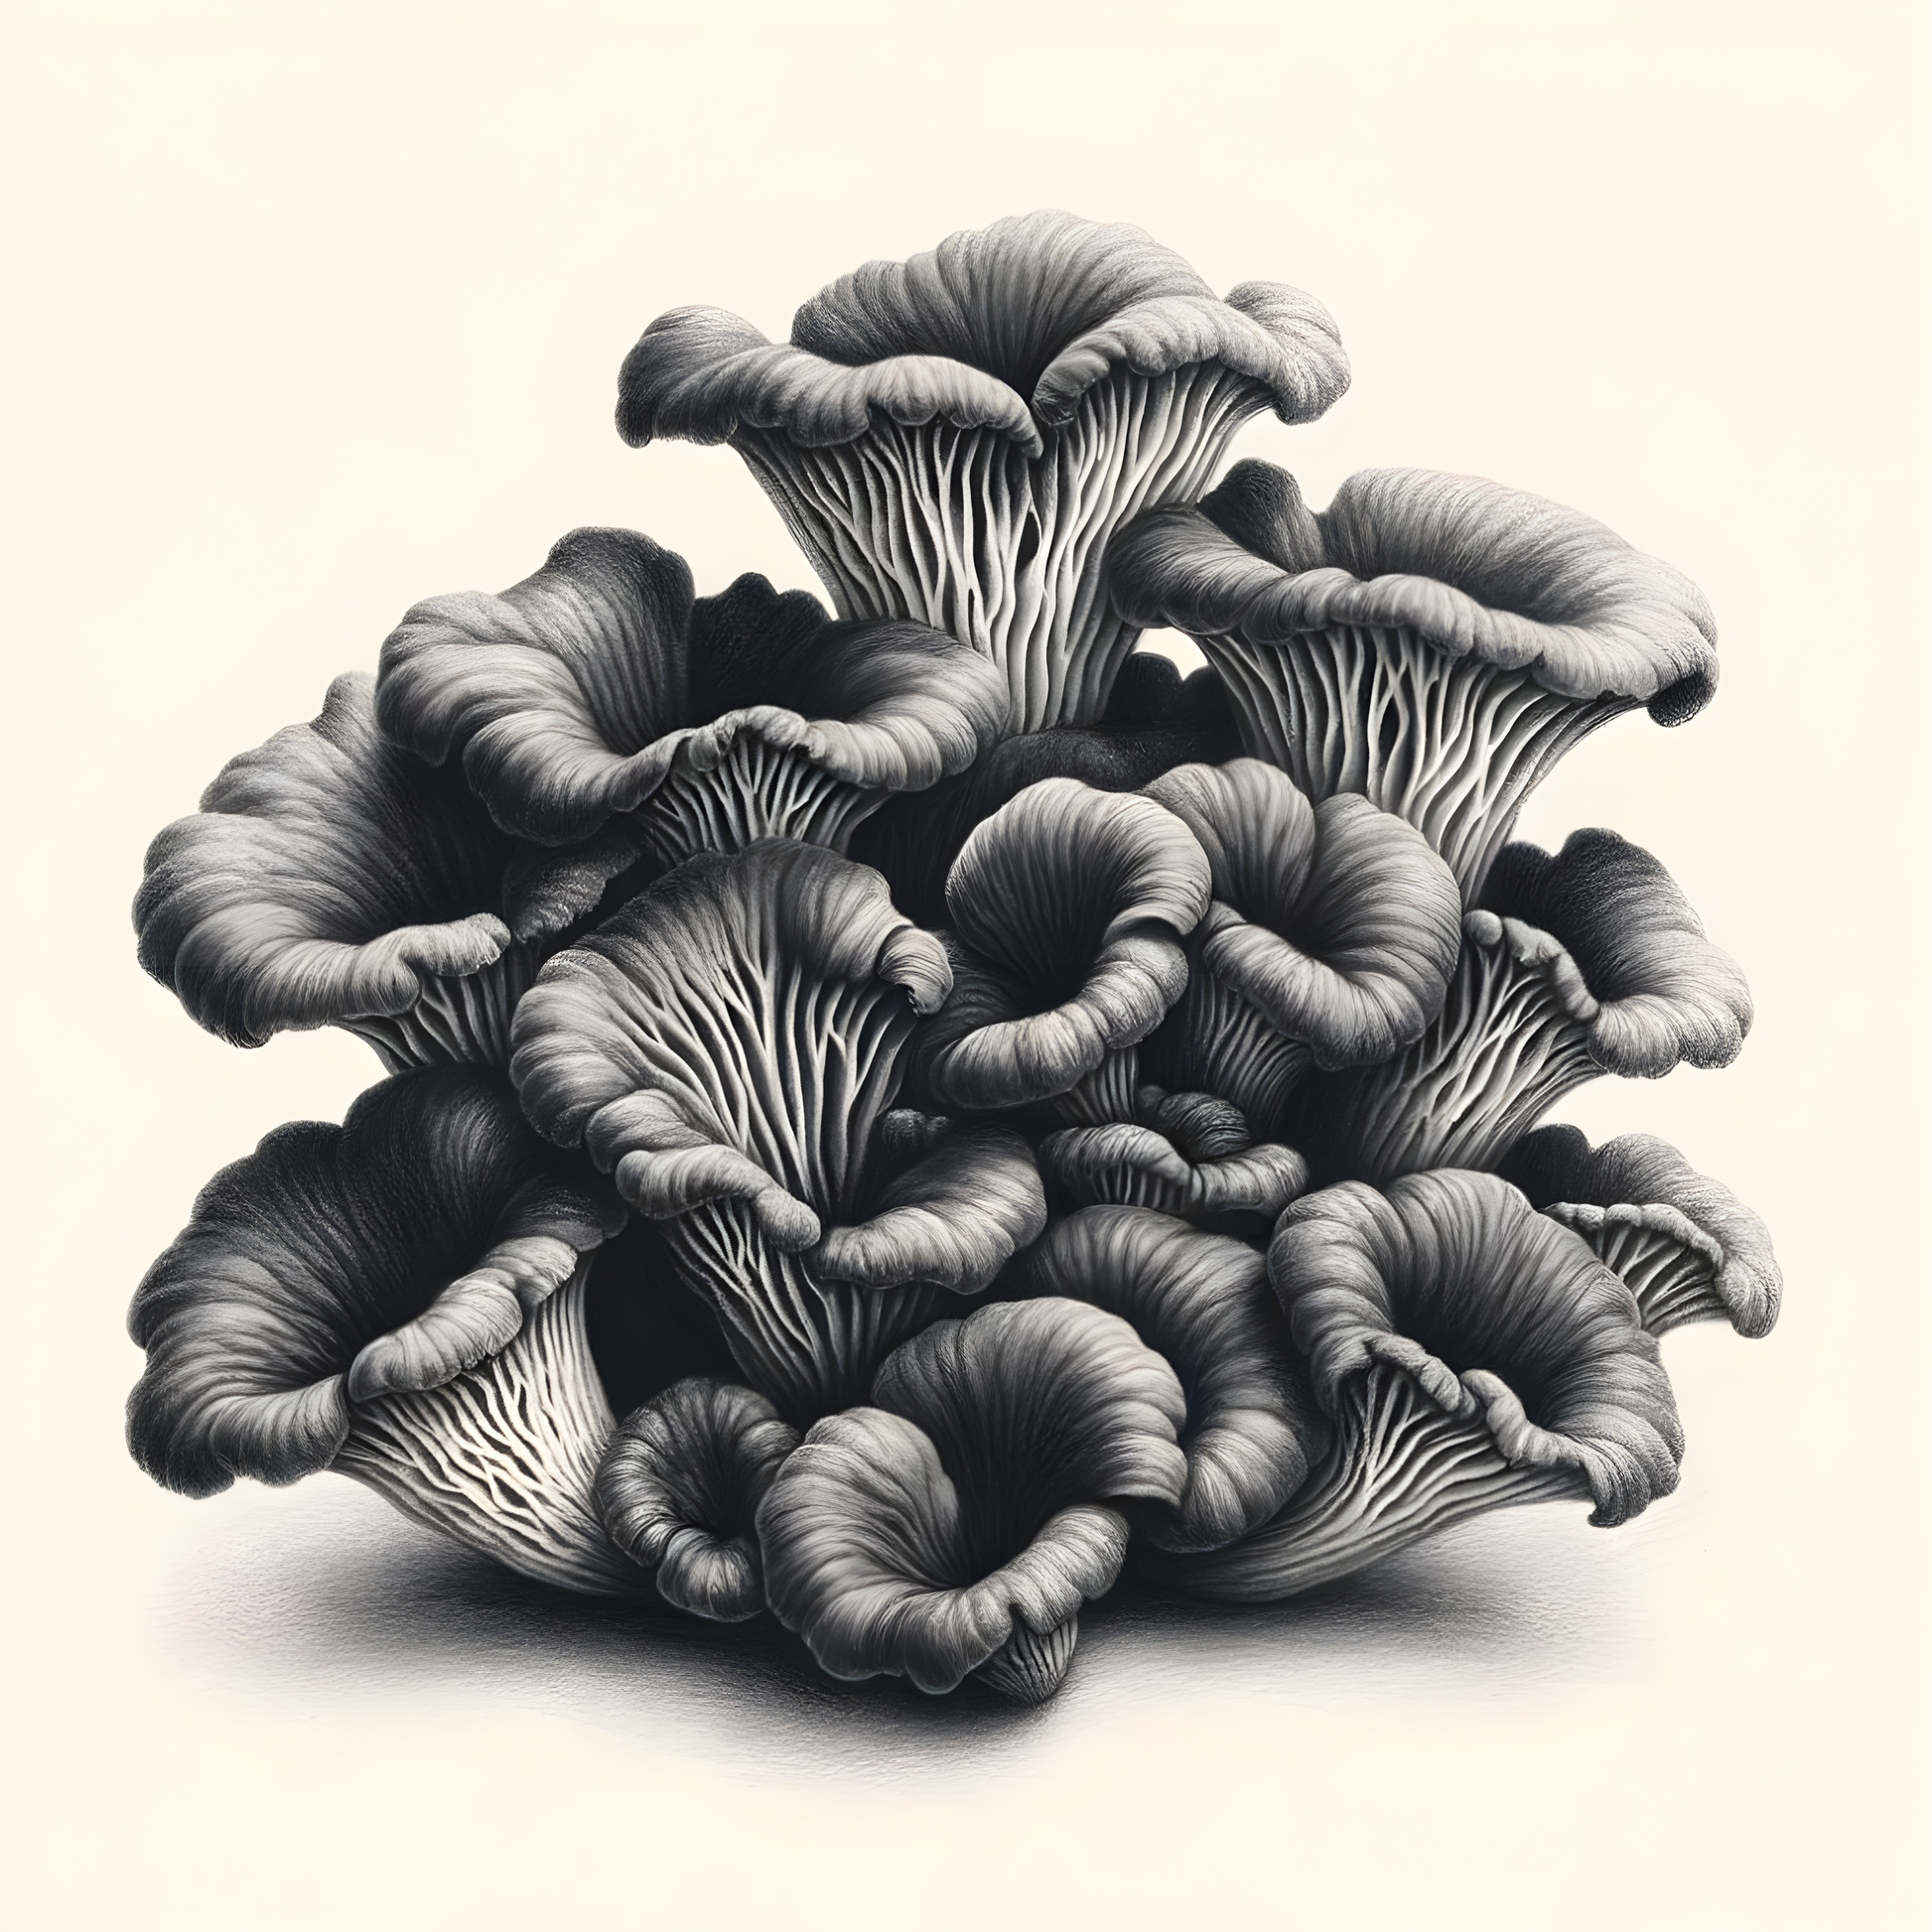 Mushroom Cluster Poster - OutOfNowhereArt